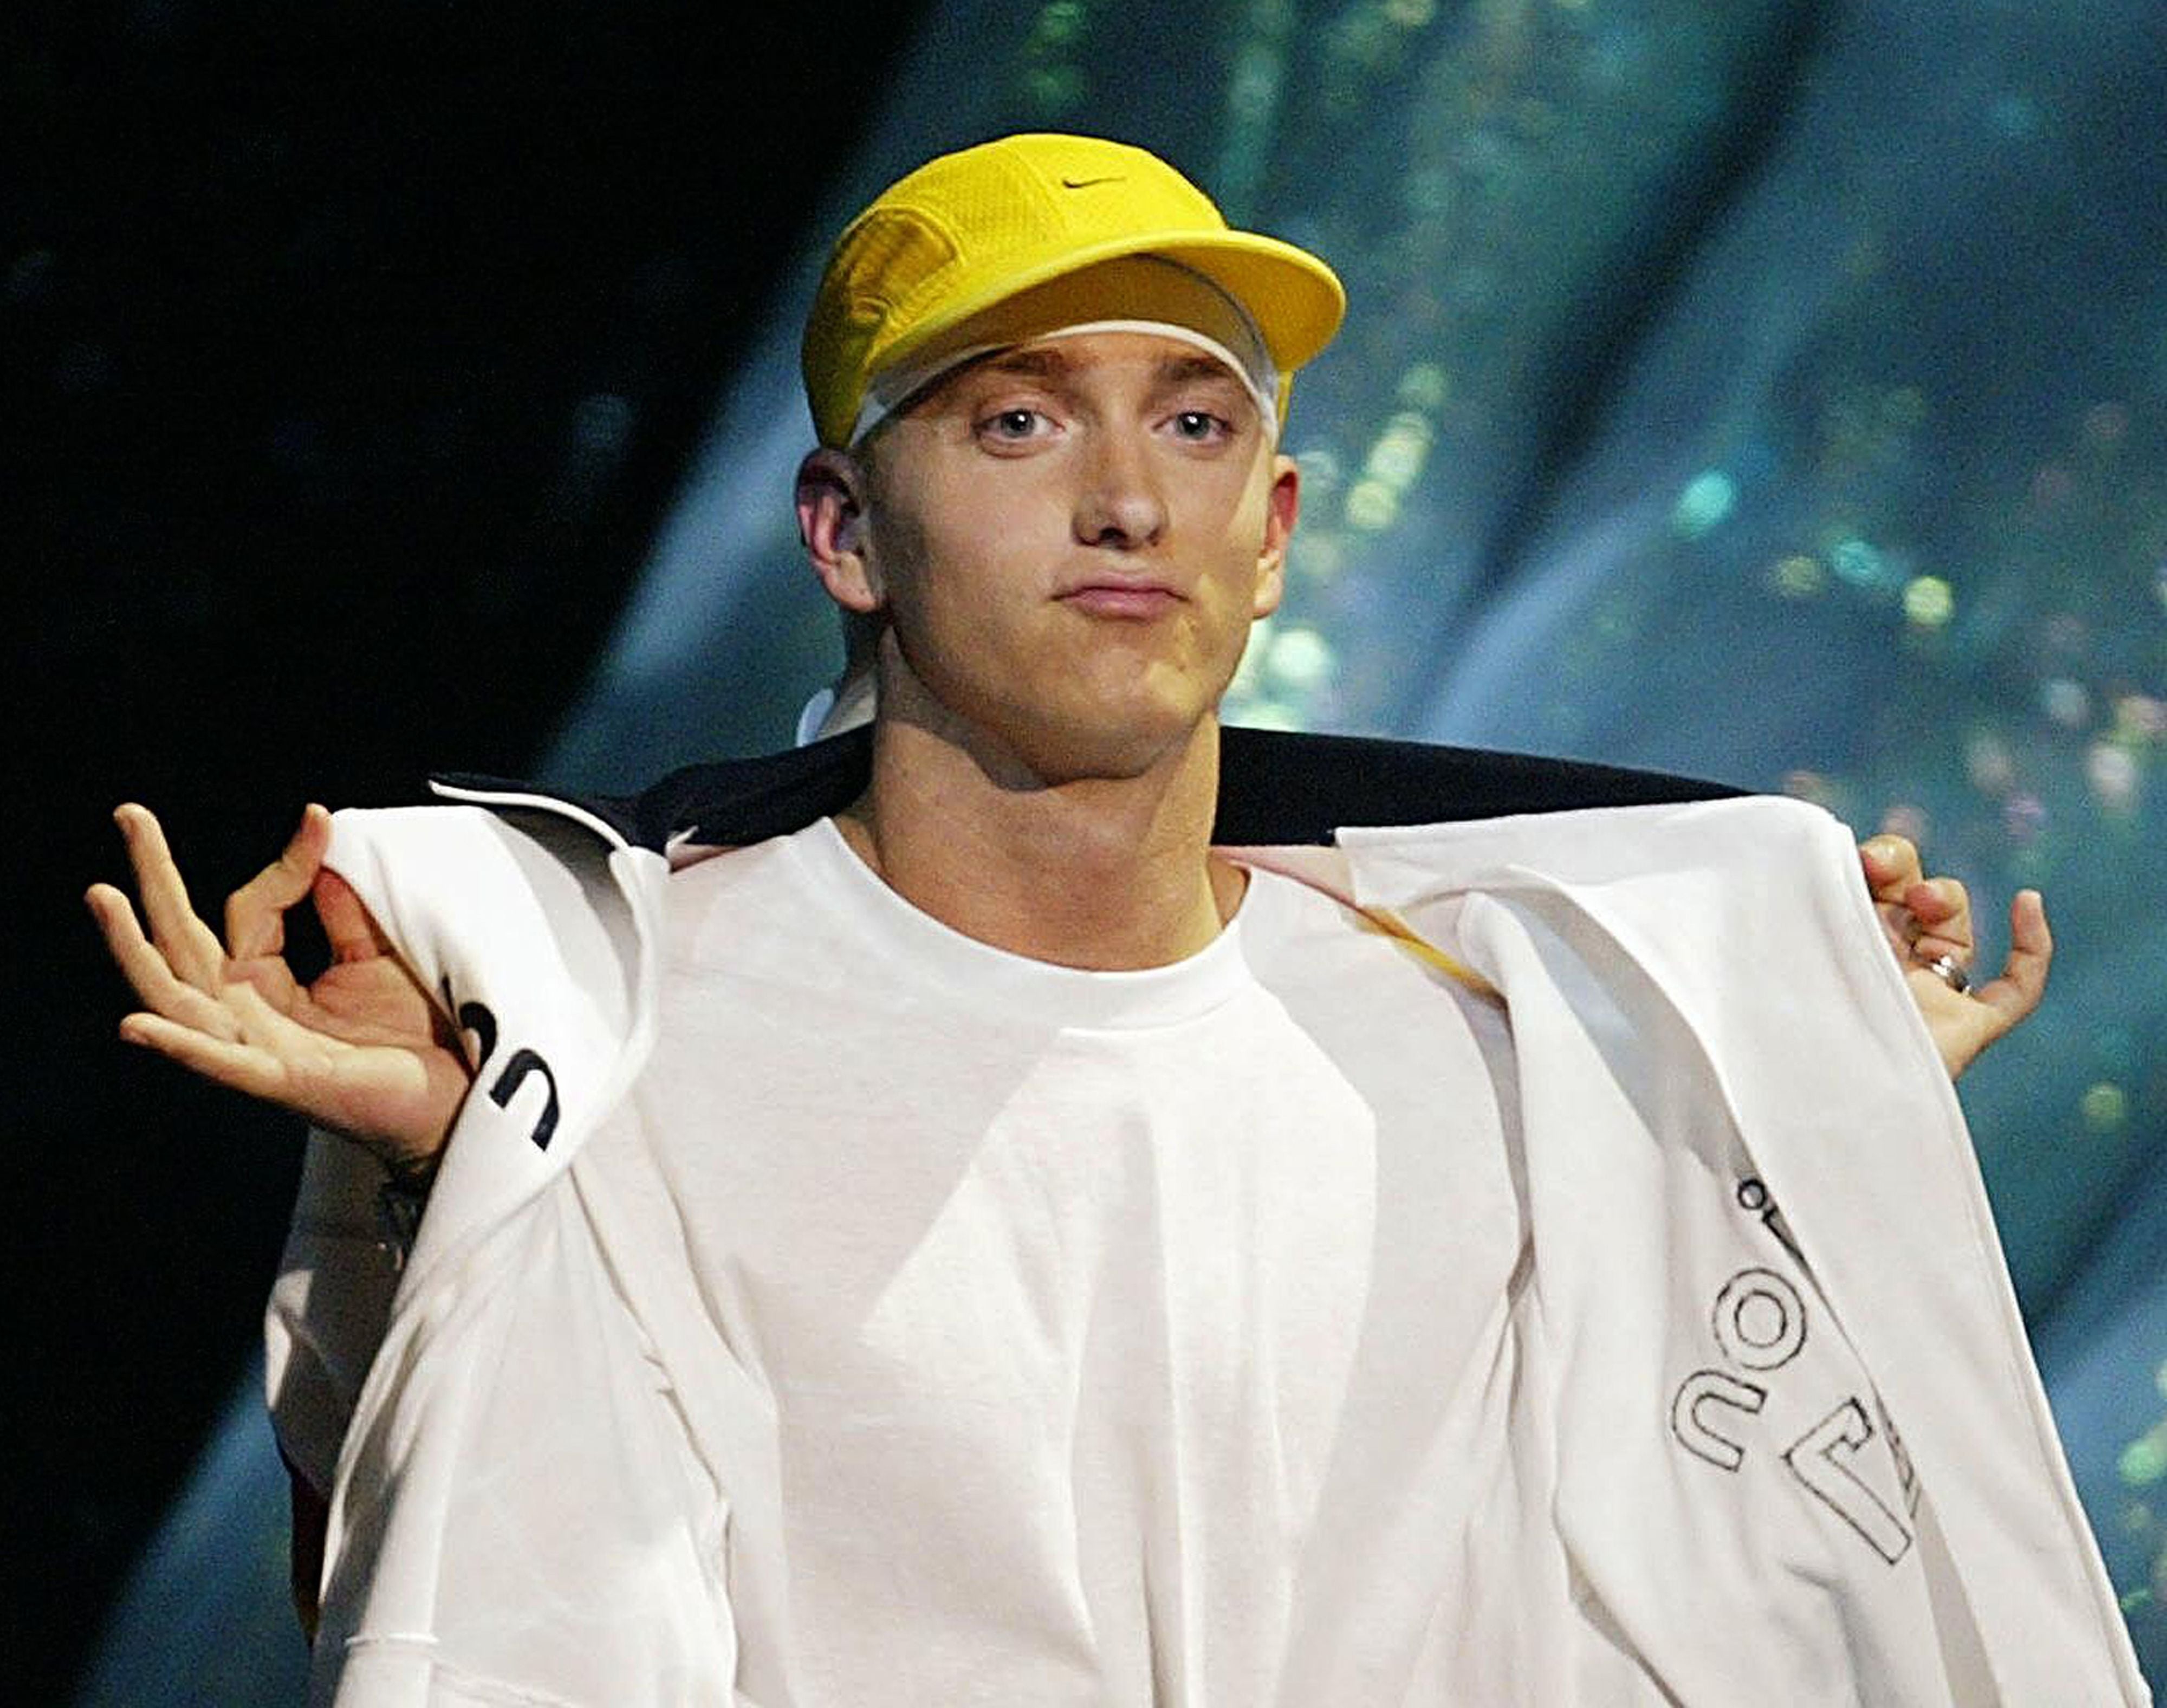 El rapero Eminem terminó de consolidar su carrera artística con la producción del filme '8 Mile', cuya banda sonora incluyó el tema 'Lose Yourself'.